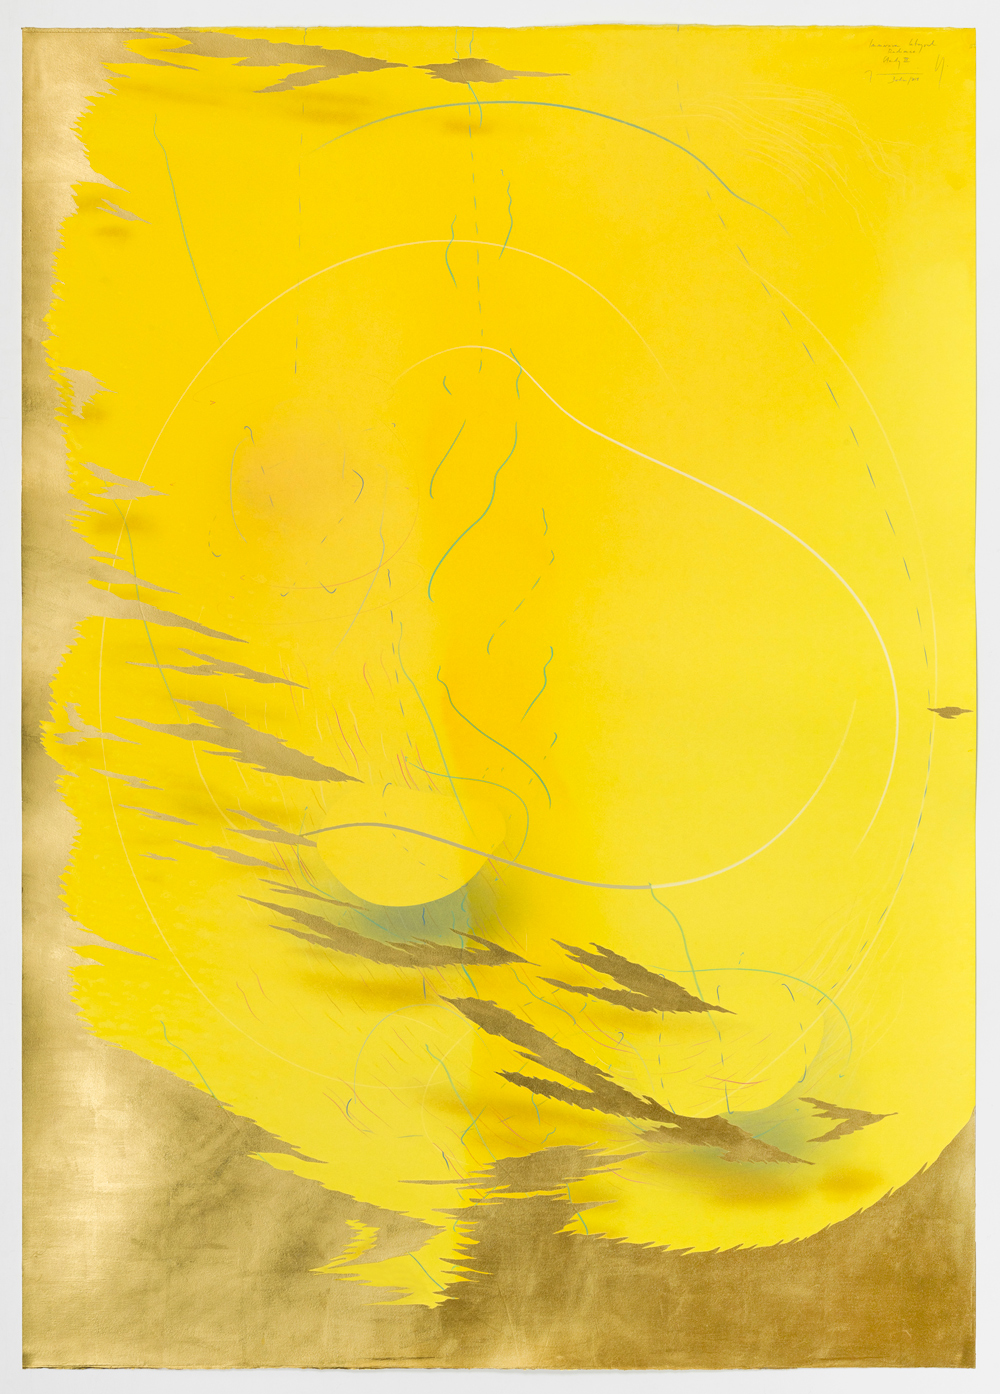 WV 2018-167Immersive Integral Radiance Study III Jorinde Voigt Berlin 2018 139,5 x 99,5 cm Tusche, Blattgold, Pastell, Ölkreide, Graphit auf Papier Unikat Signiert